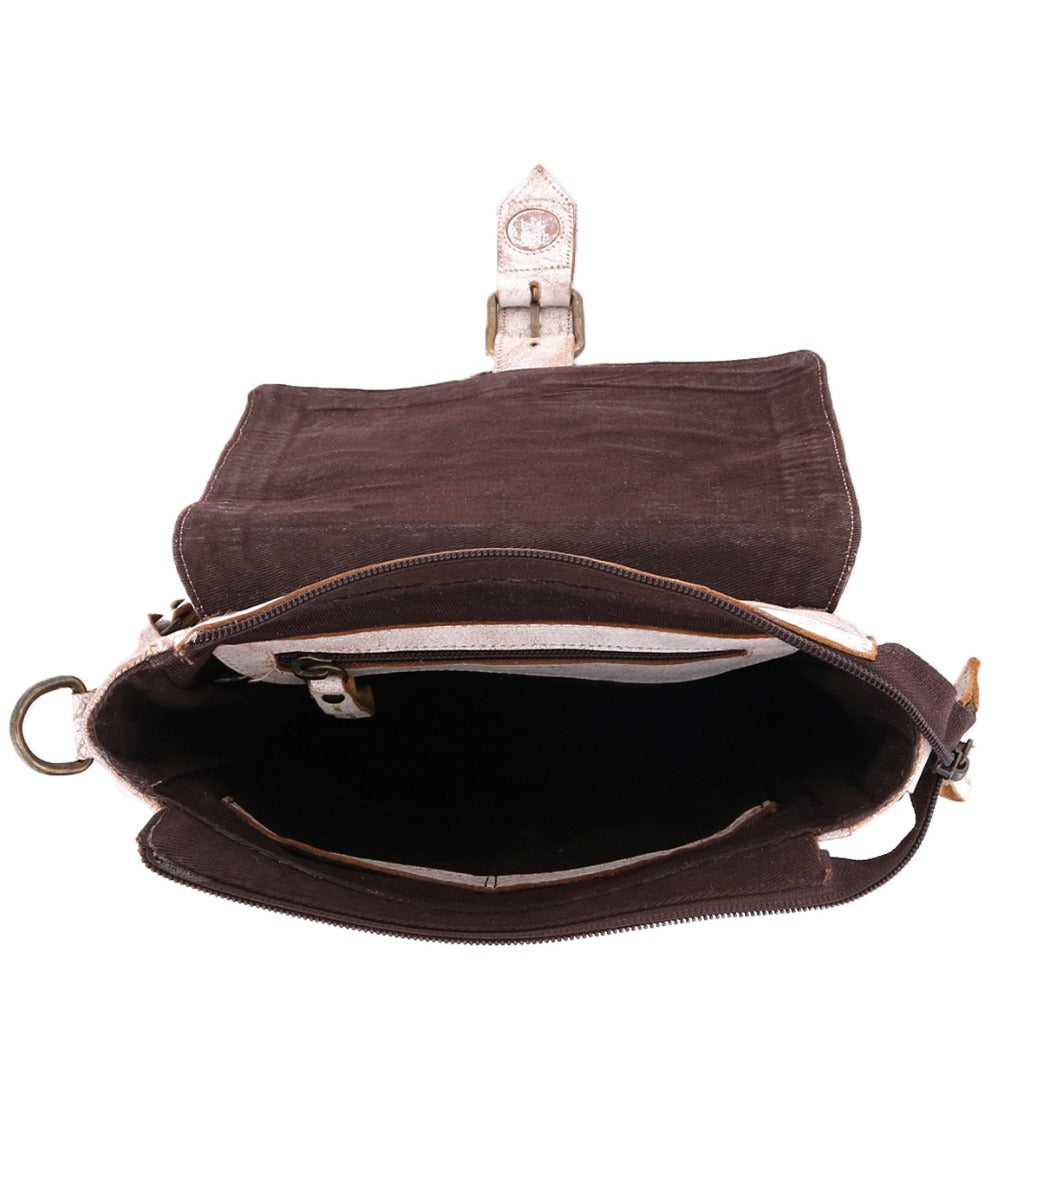 A Bed Stu Ainhoa purse with a zip-top closure.